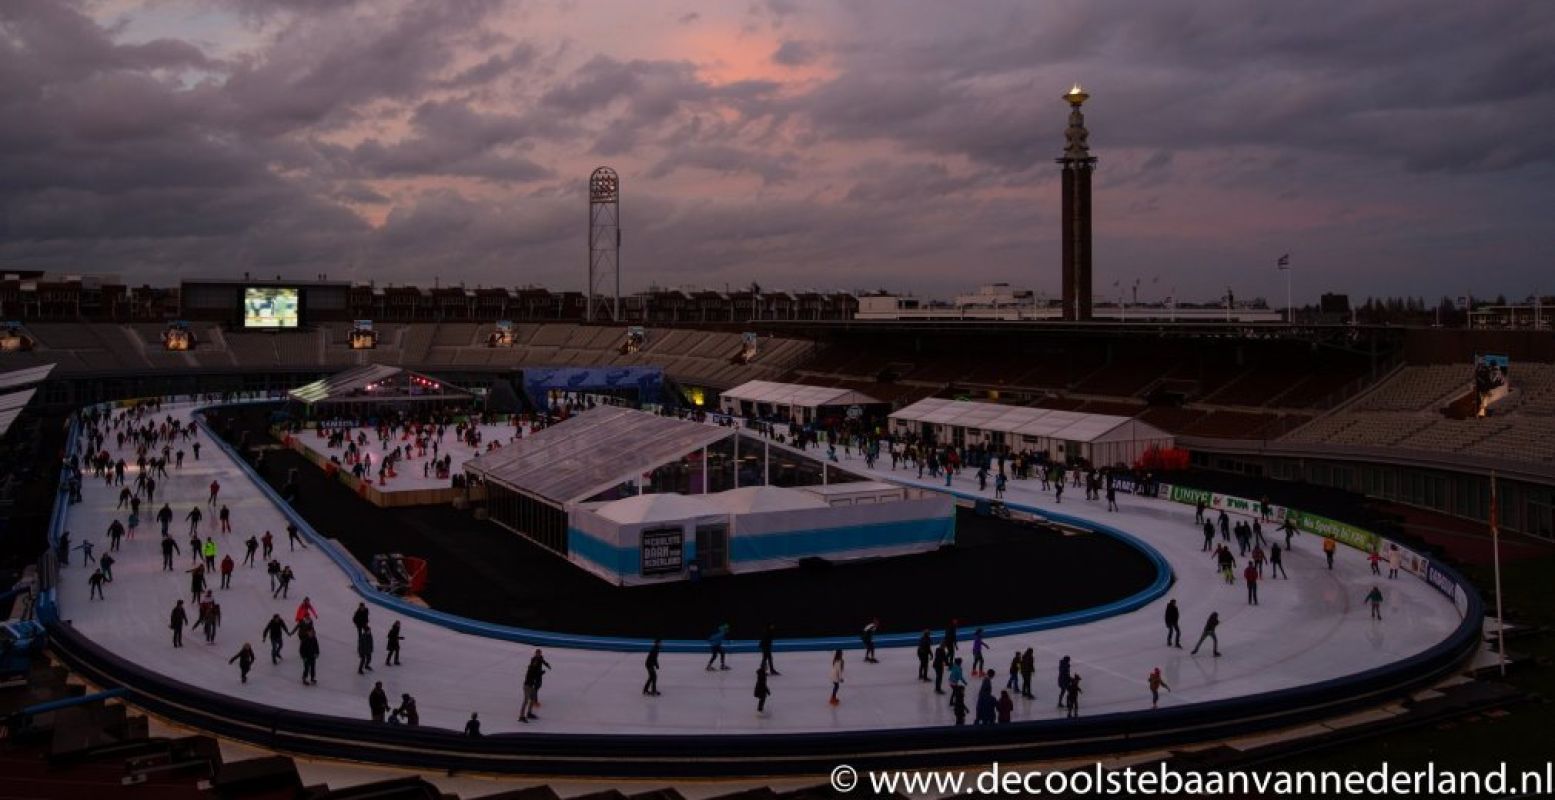 Kom schaatsen in de avond! Foto: De Coolste Baan van Nederland